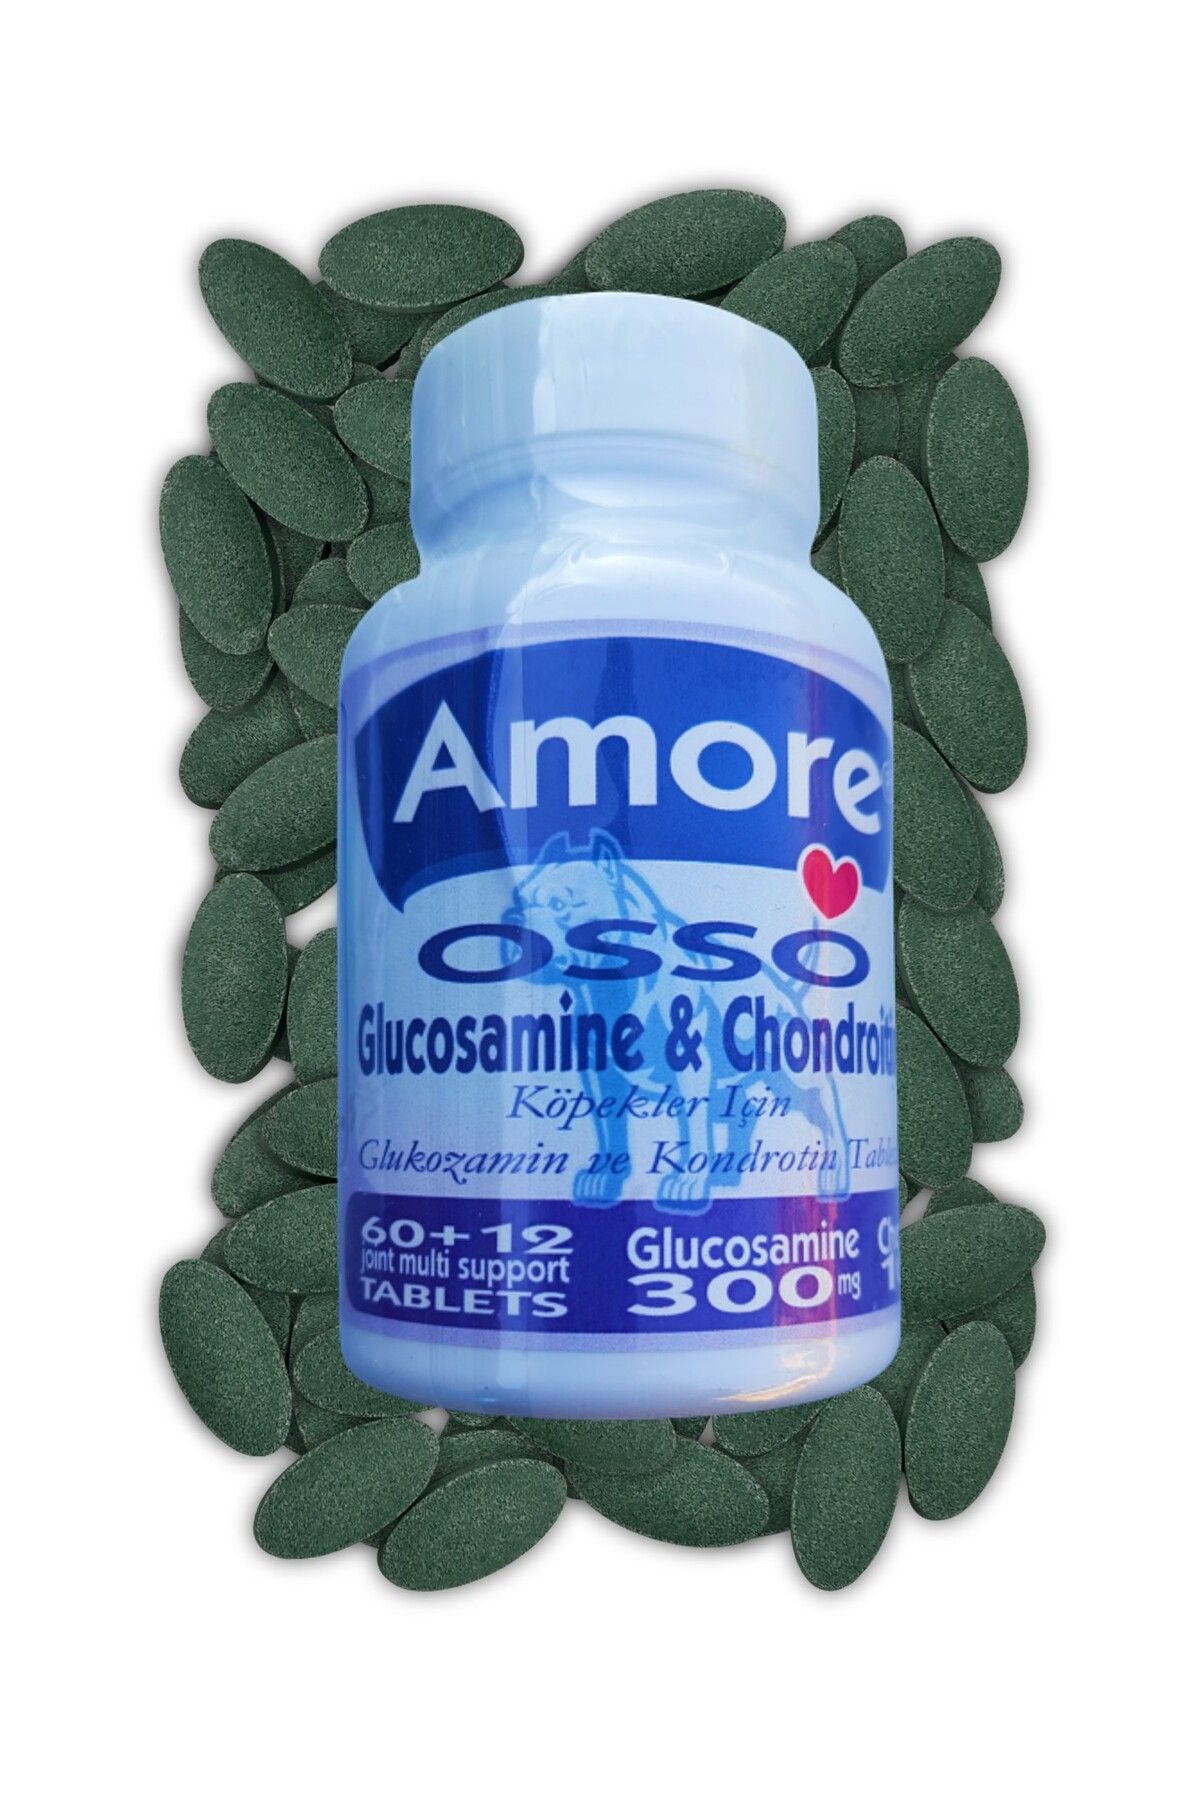 Amore Avida 24 Tavuk Etli Sticks ve Glikozamin Tablet, Kopek Odul Mamasi, Osso 72 Glucosamine Tabs